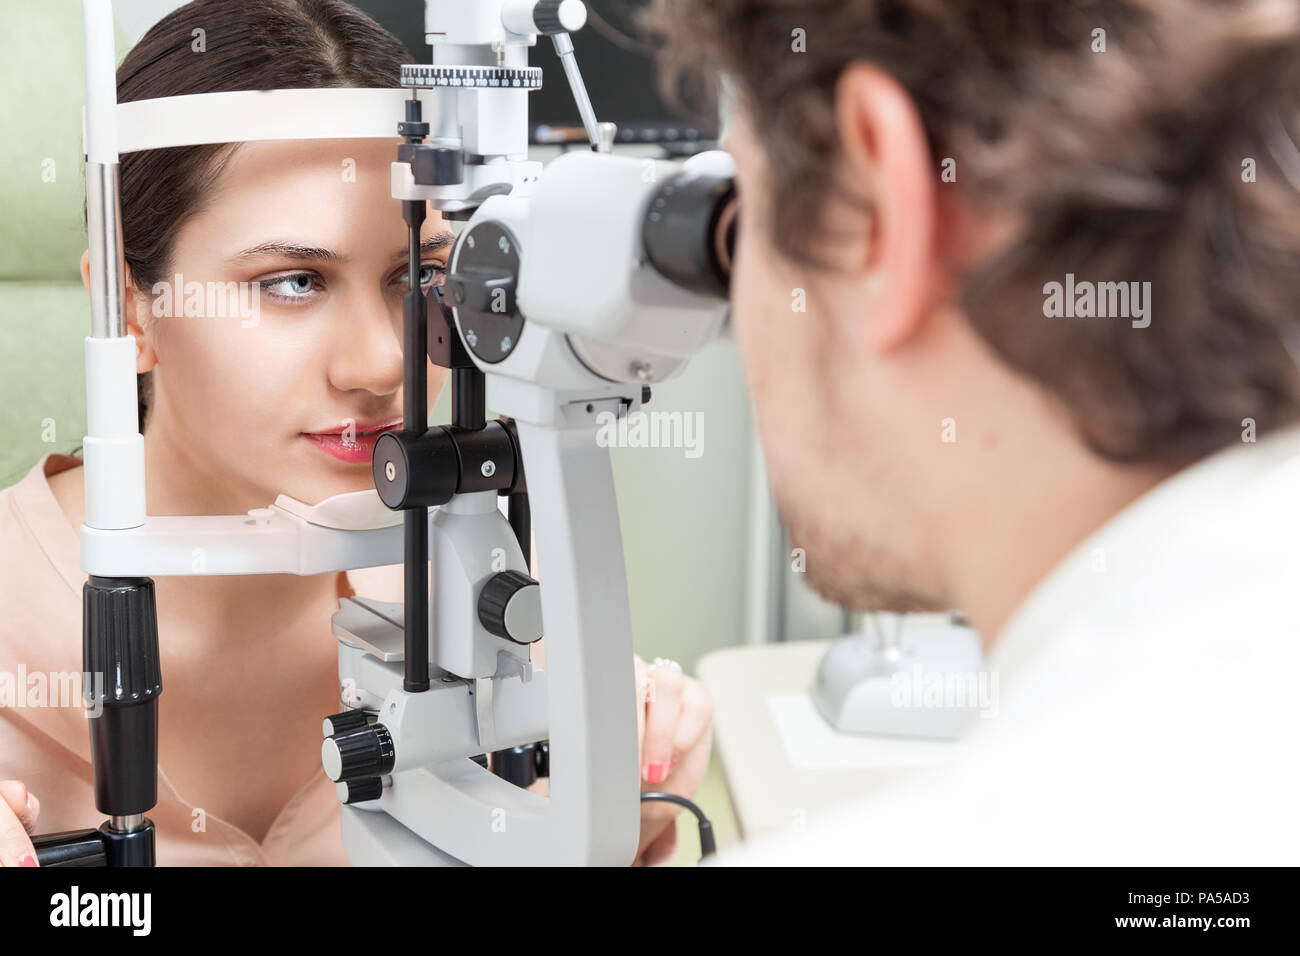 Hübsche Frau während einer Untersuchung mit der Spaltlampe/Augenarzt in den Augen der Klinik, Hornhaut und Netzhaut Untersuchung Diagnose-/high technology Konzept Augen Stockfoto